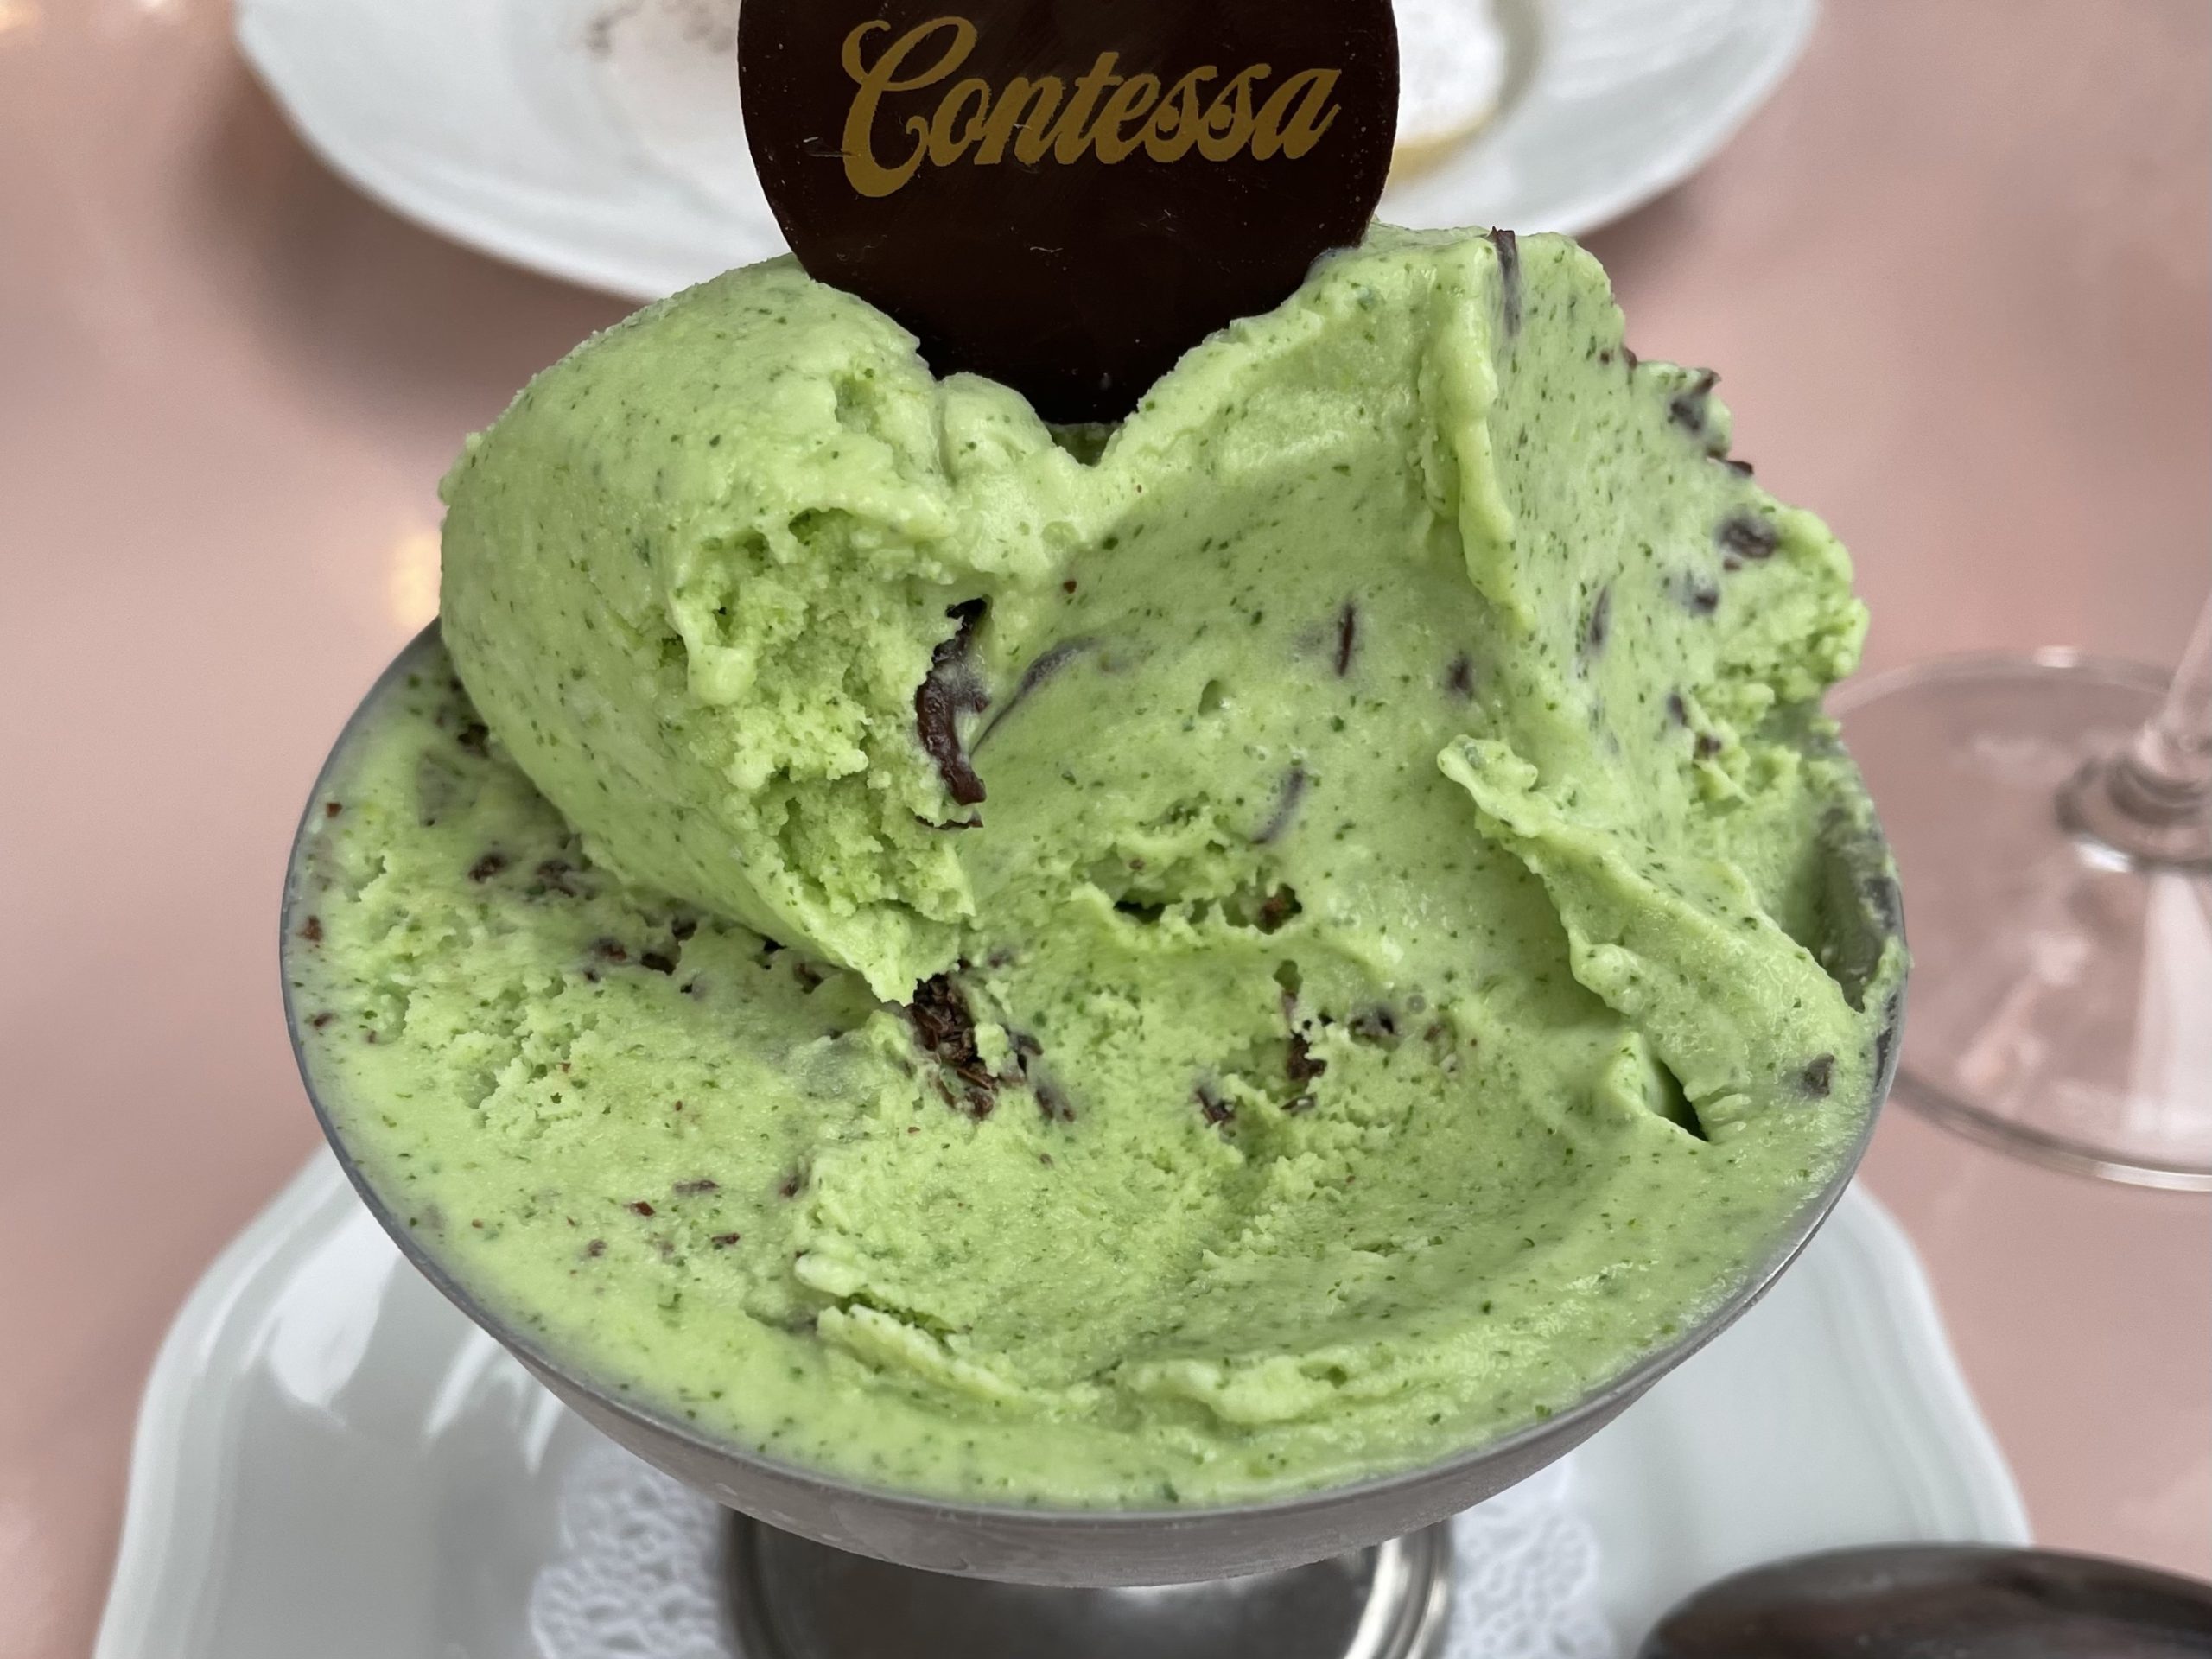 Contessa ice cream